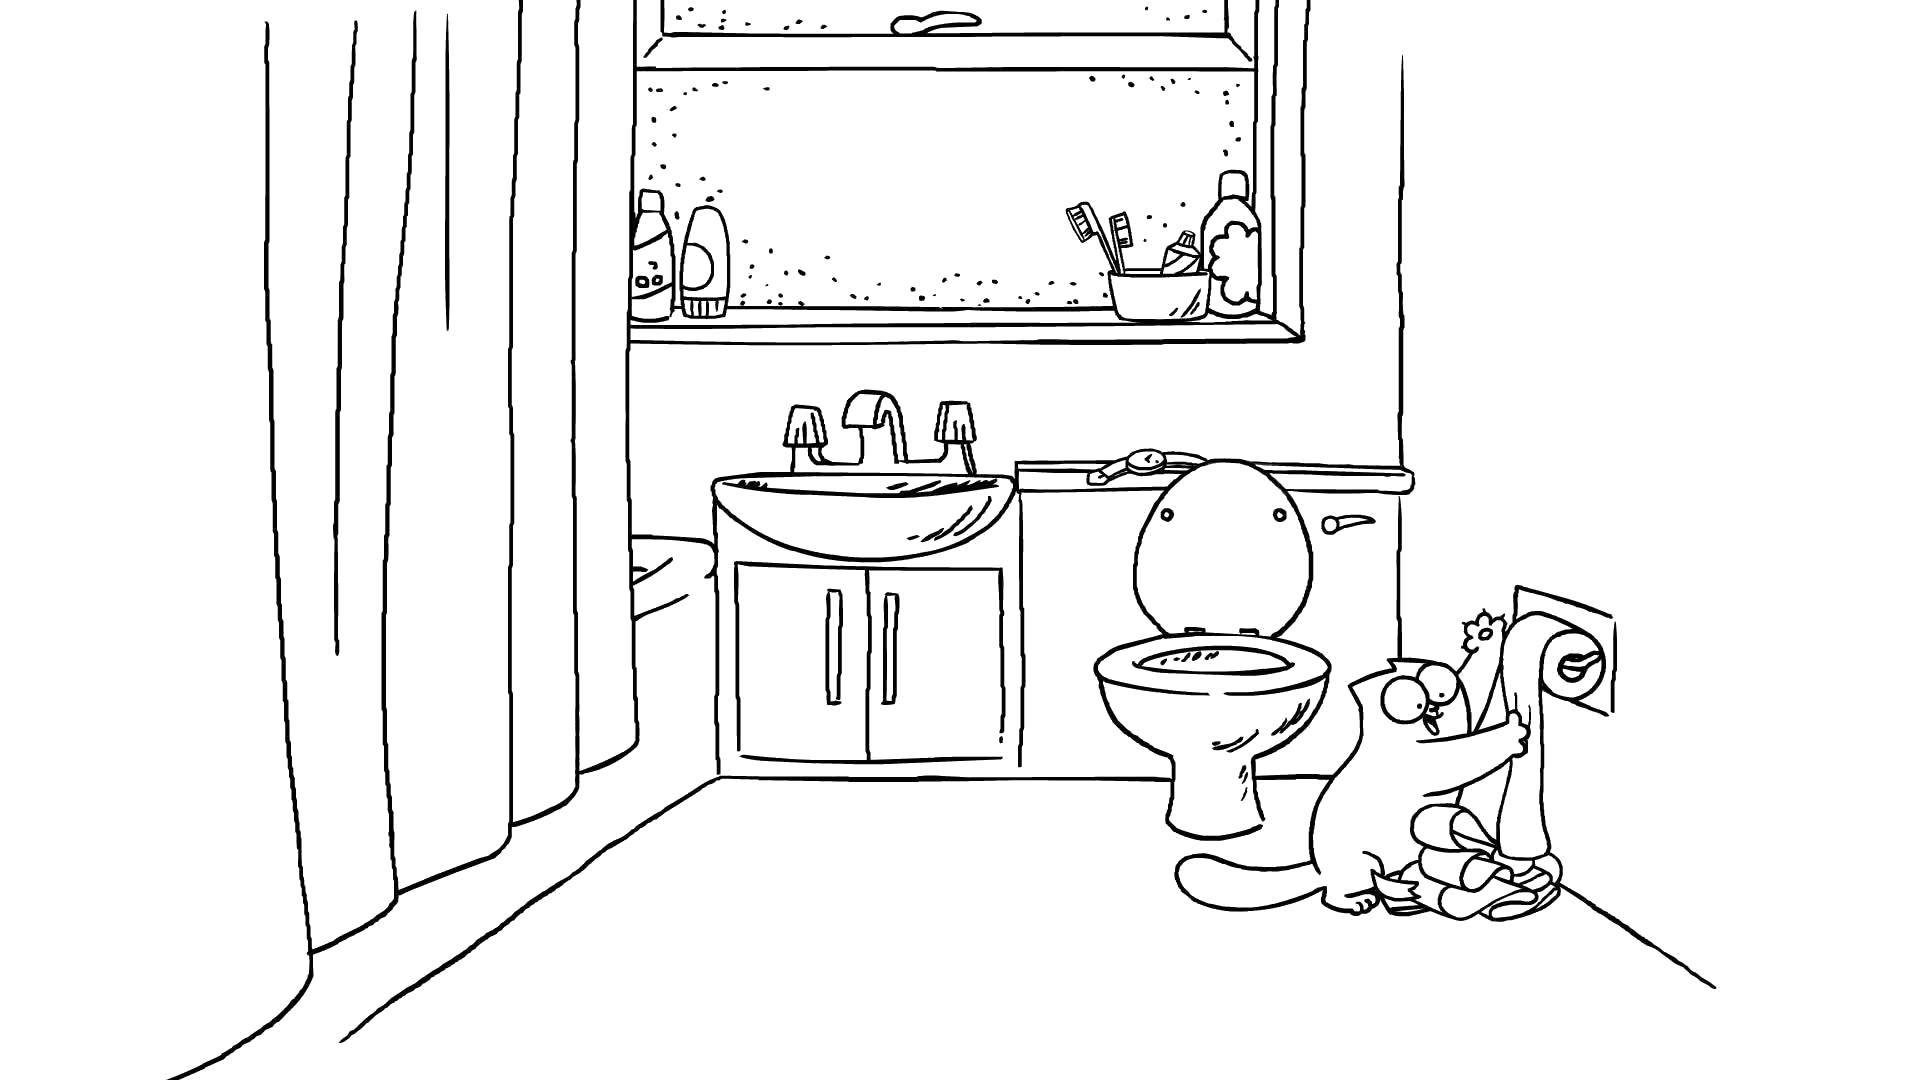 Coloring Кот играет с туалетной бумагой. Category кот саймона. Tags:  Персонаж из мультфильма.